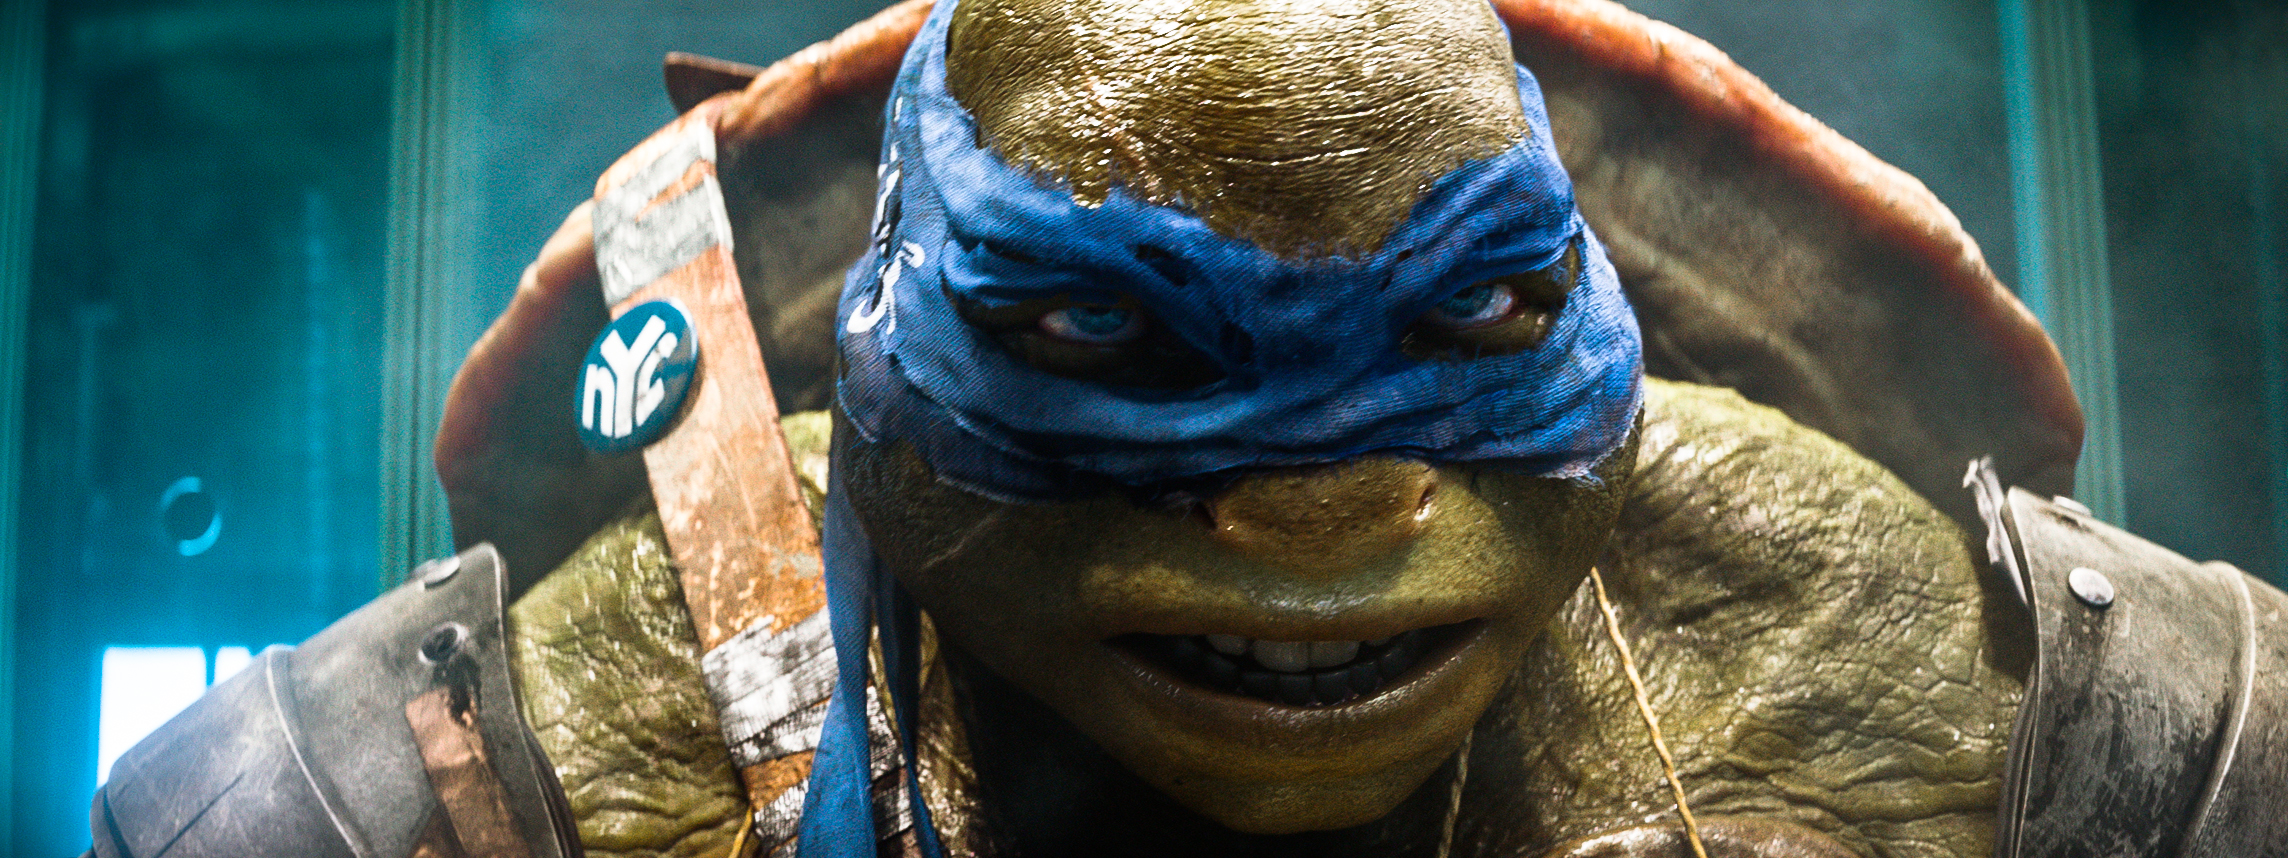 Movie Teenage Mutant Ninja Turtles (2014) HD Wallpaper | Background Image